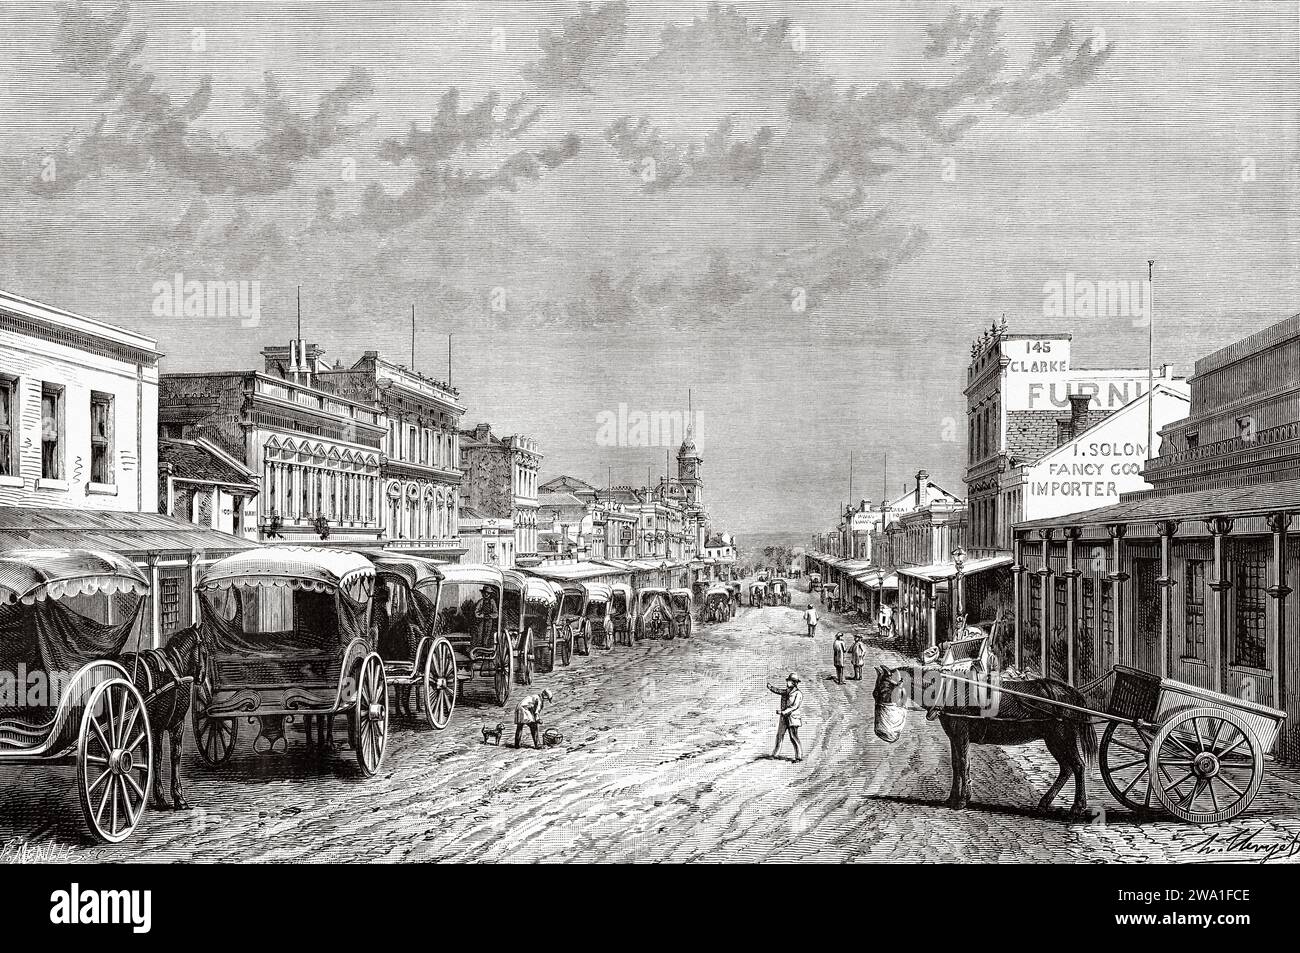 Swanston Street, Melbourne. Victoria, Australia. Sei mesi in Australia 1878 da Desire Charnay (1828 - 1915) incisione del vecchio XIX secolo da le Tour du Monde 1880 Foto Stock